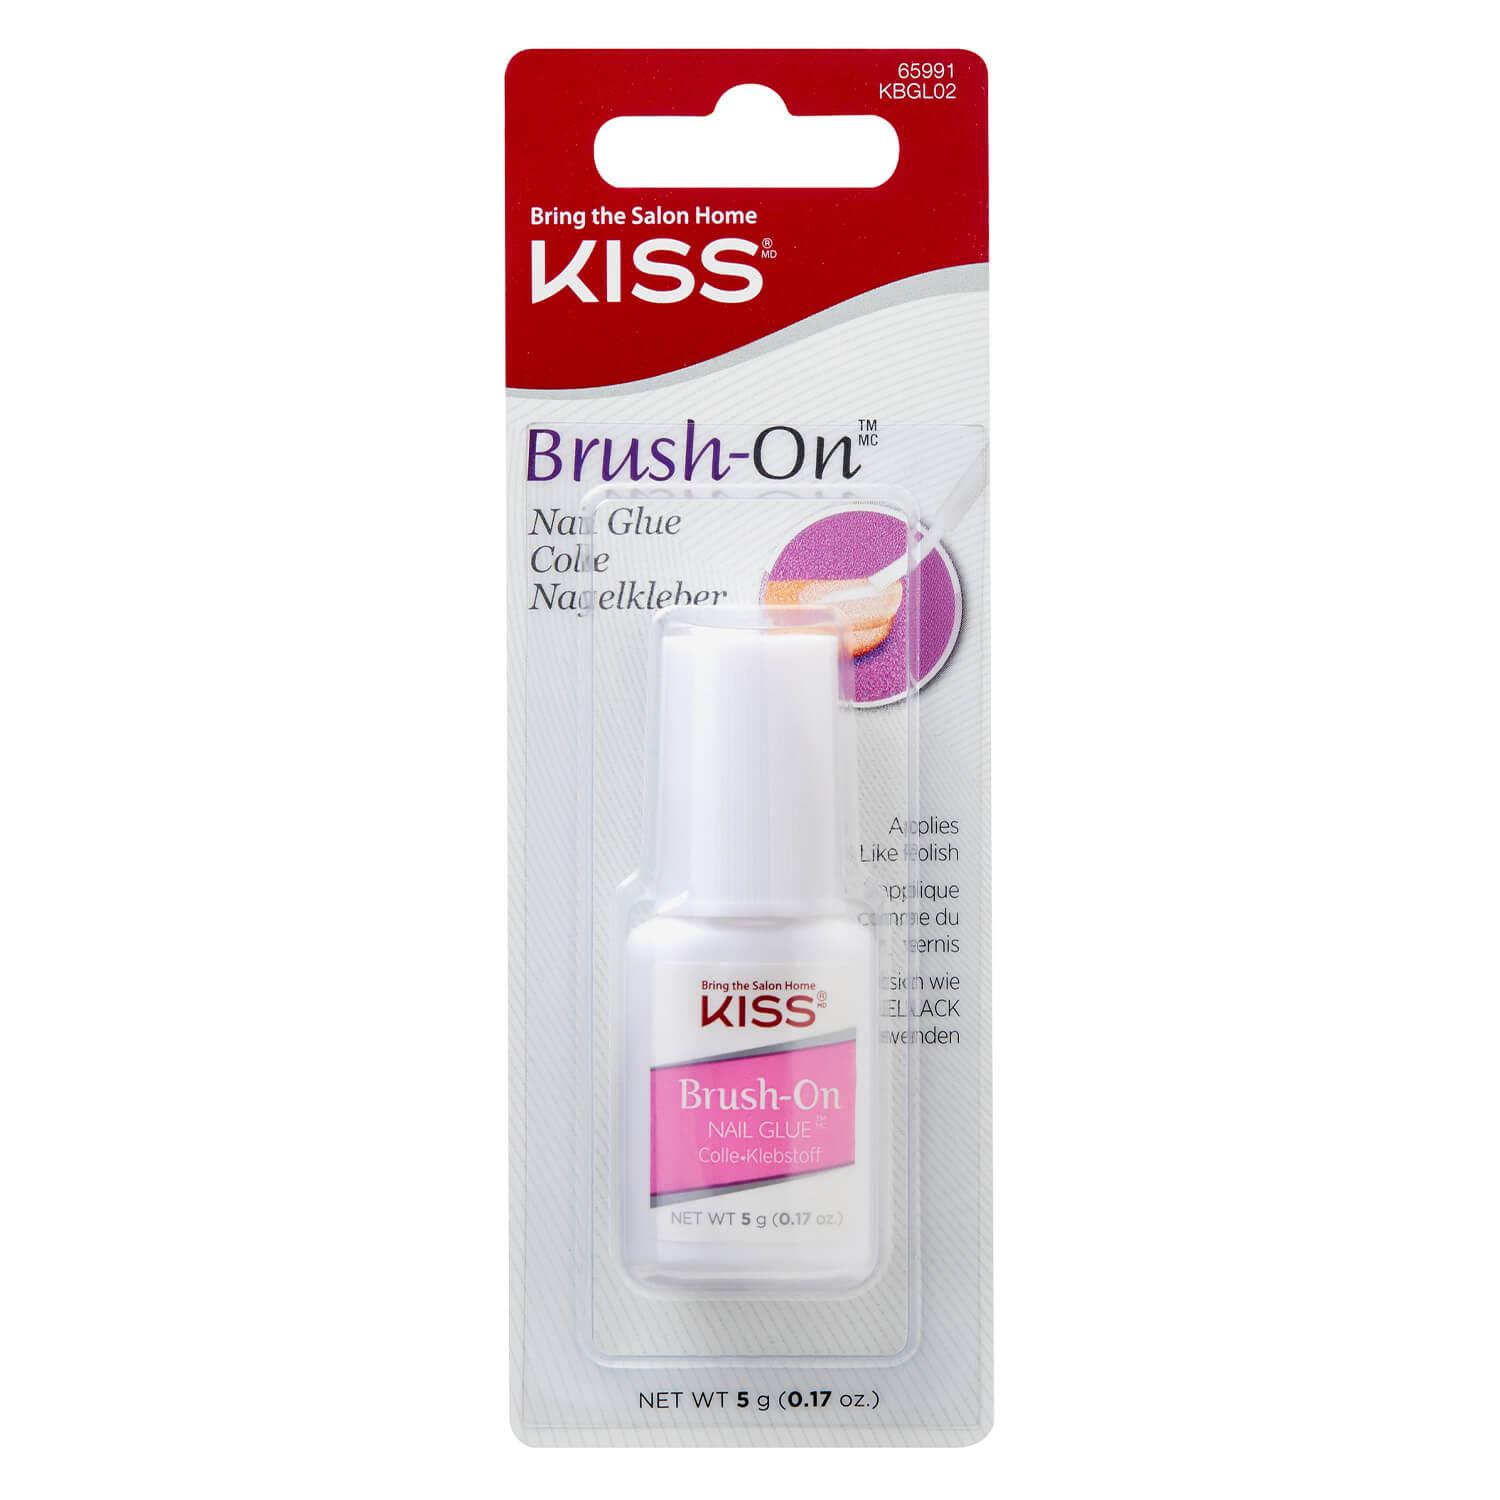 KISS Nails - Brush-On Nail Glue